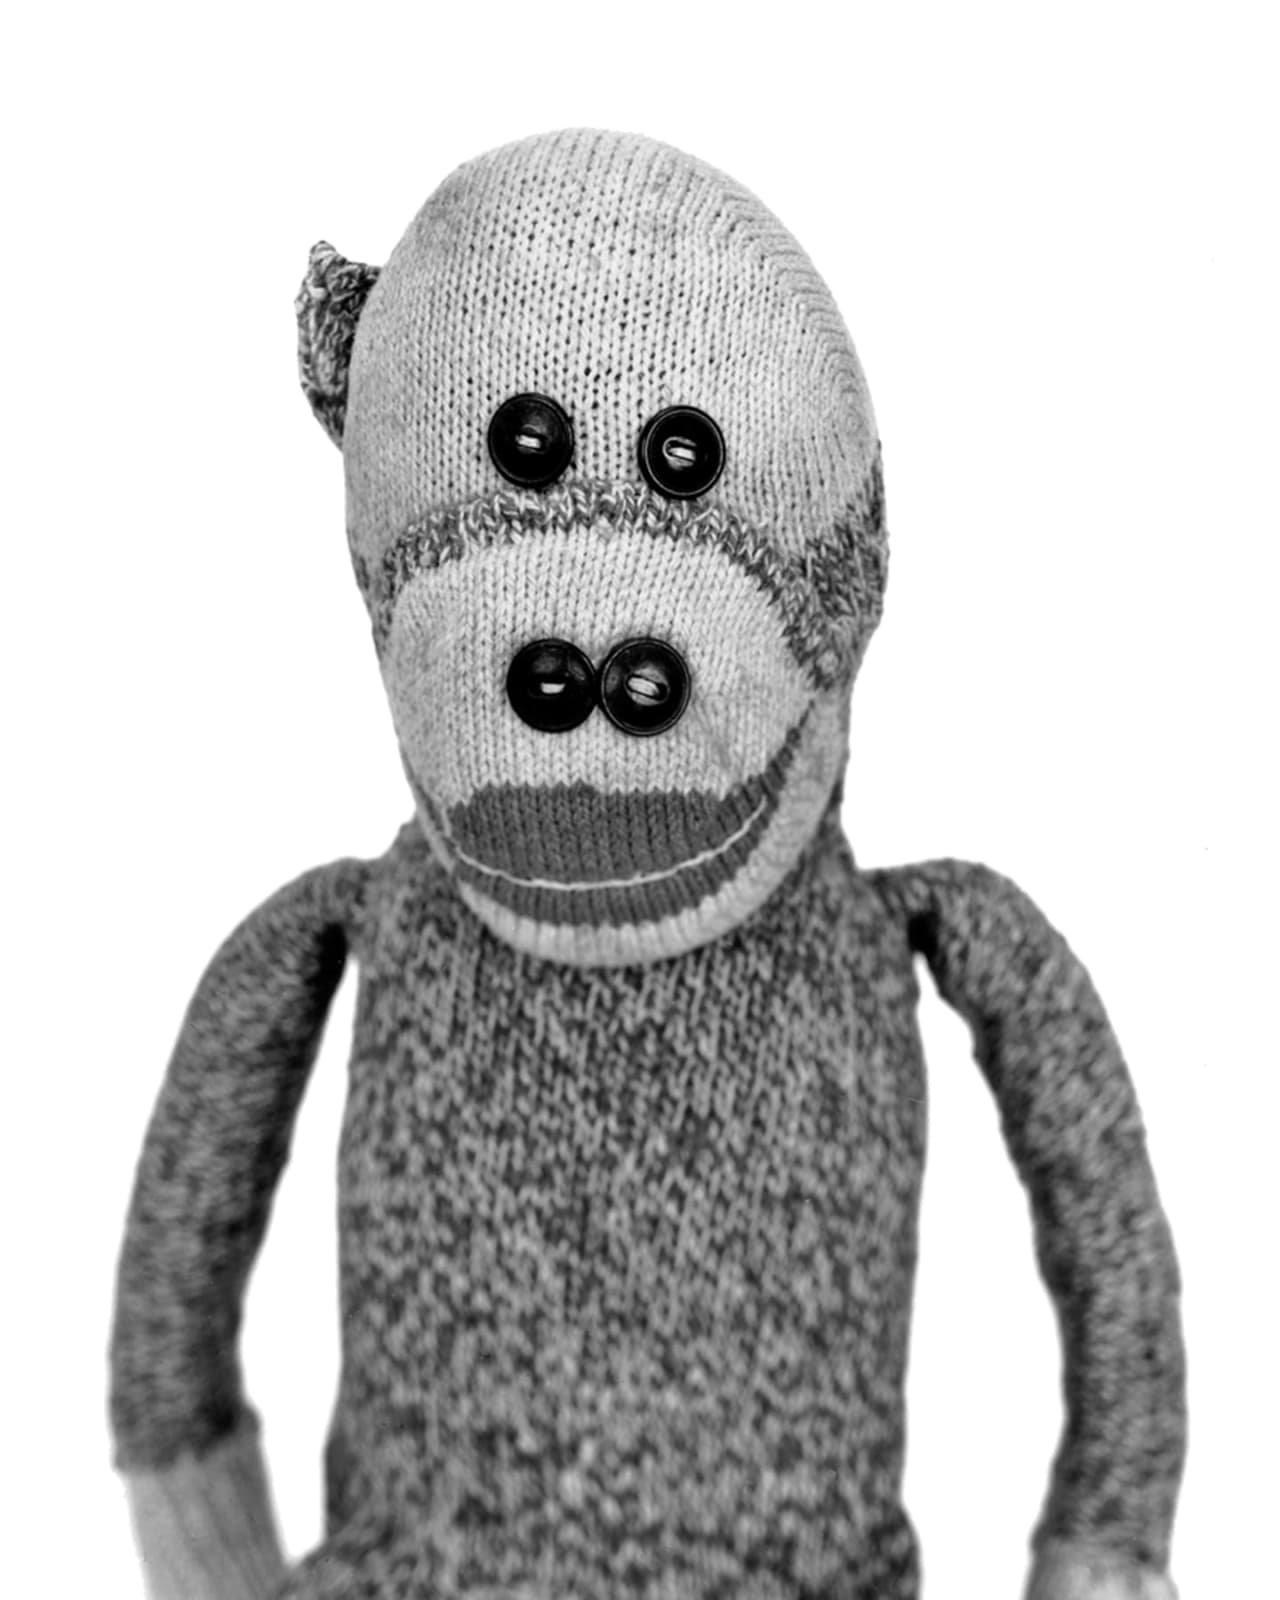 Arne Svenson, Sock Monkey 4, 2002